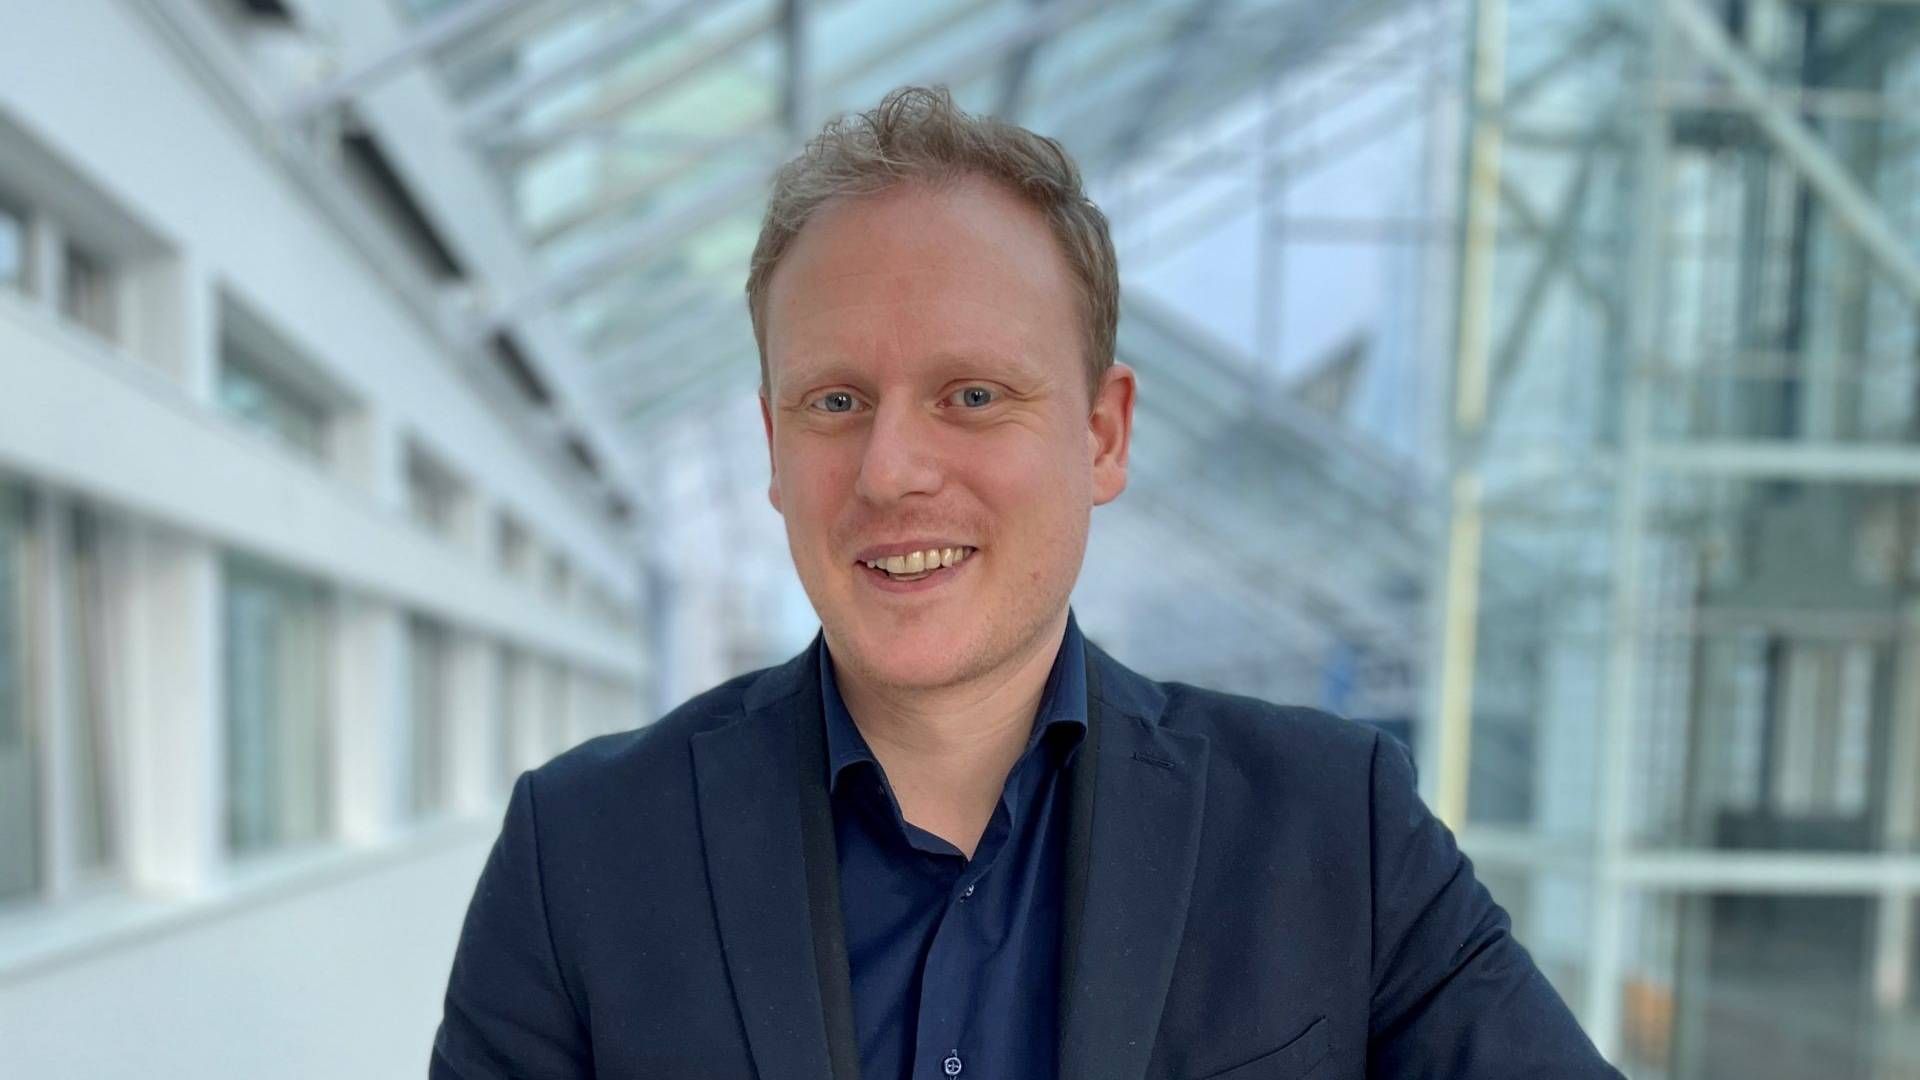 RETTESNOR: – Målet er å skape en rettesnor for kompetansebygging, og legge til rette for et støttende økosystem for bedrifter, sier Magnus Lund-Vang, test- og markedstilgangskoordinator i Norway Health Tech. | Foto: Norway Health Tech